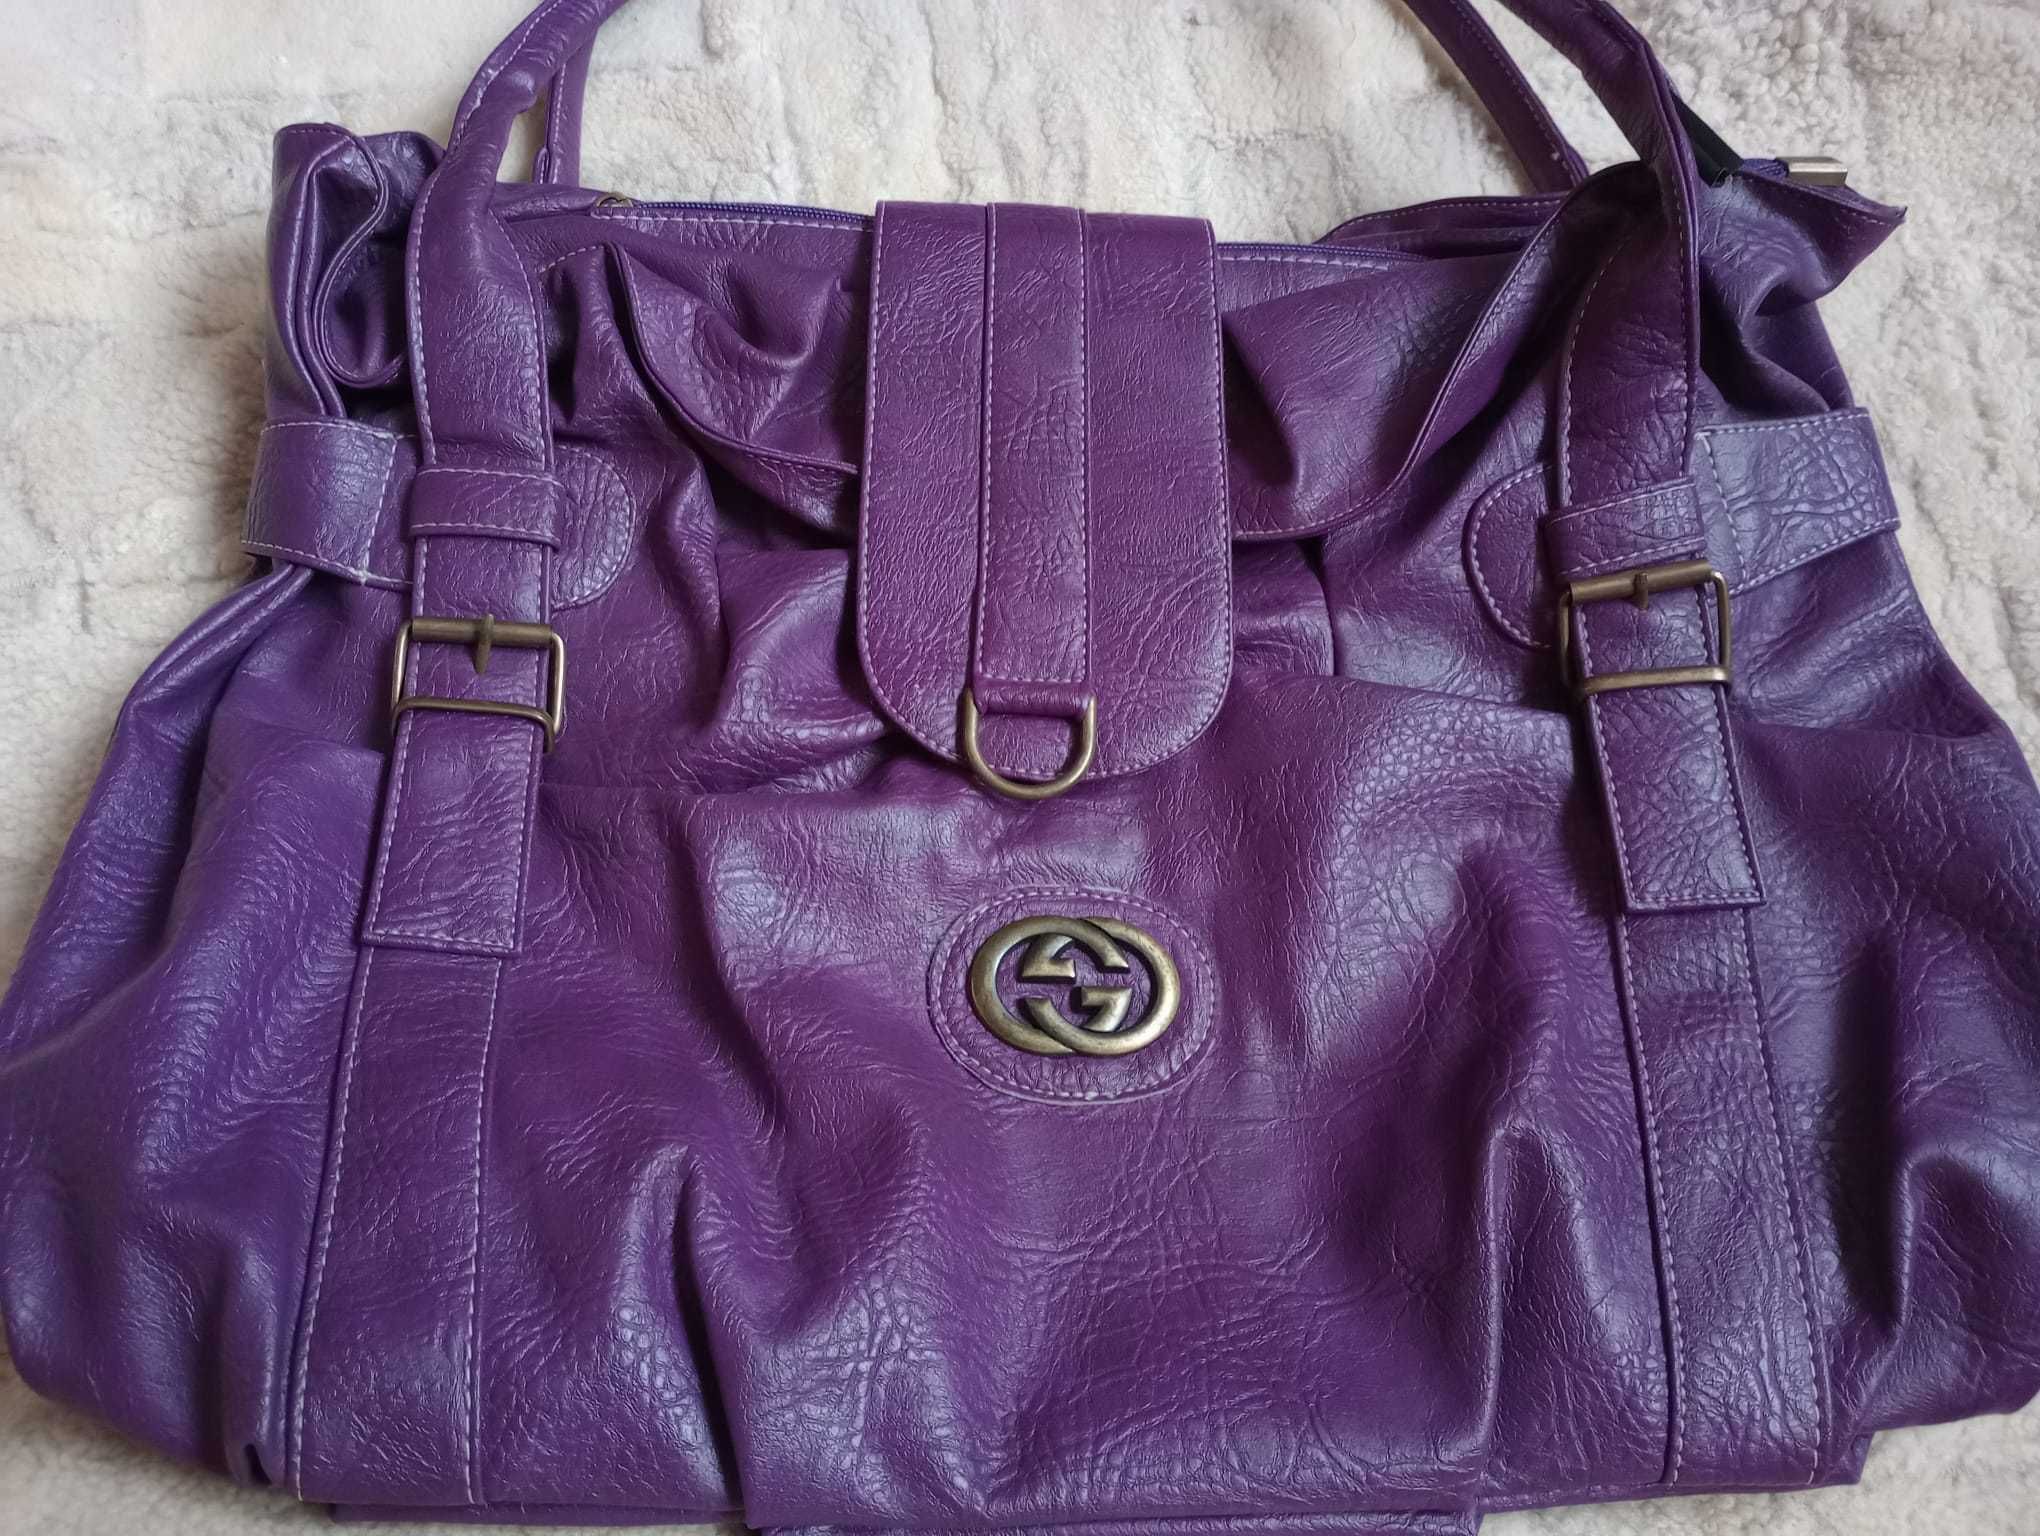 Sprzedam torebkę damską w kolorze śliwkowym z logo GG